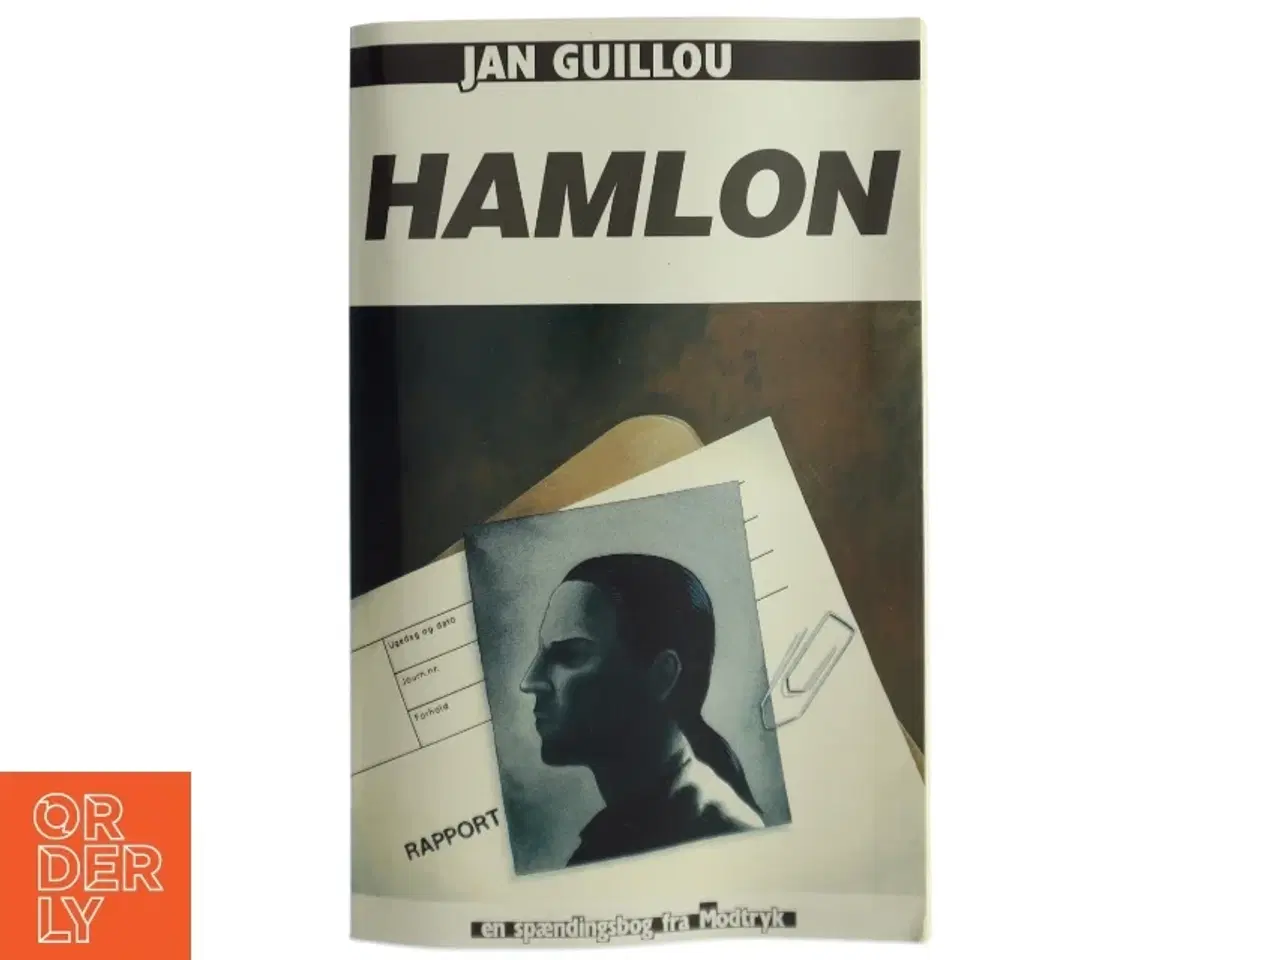 Billede 1 - Hamlon (Hamilton) af Jan Guillou